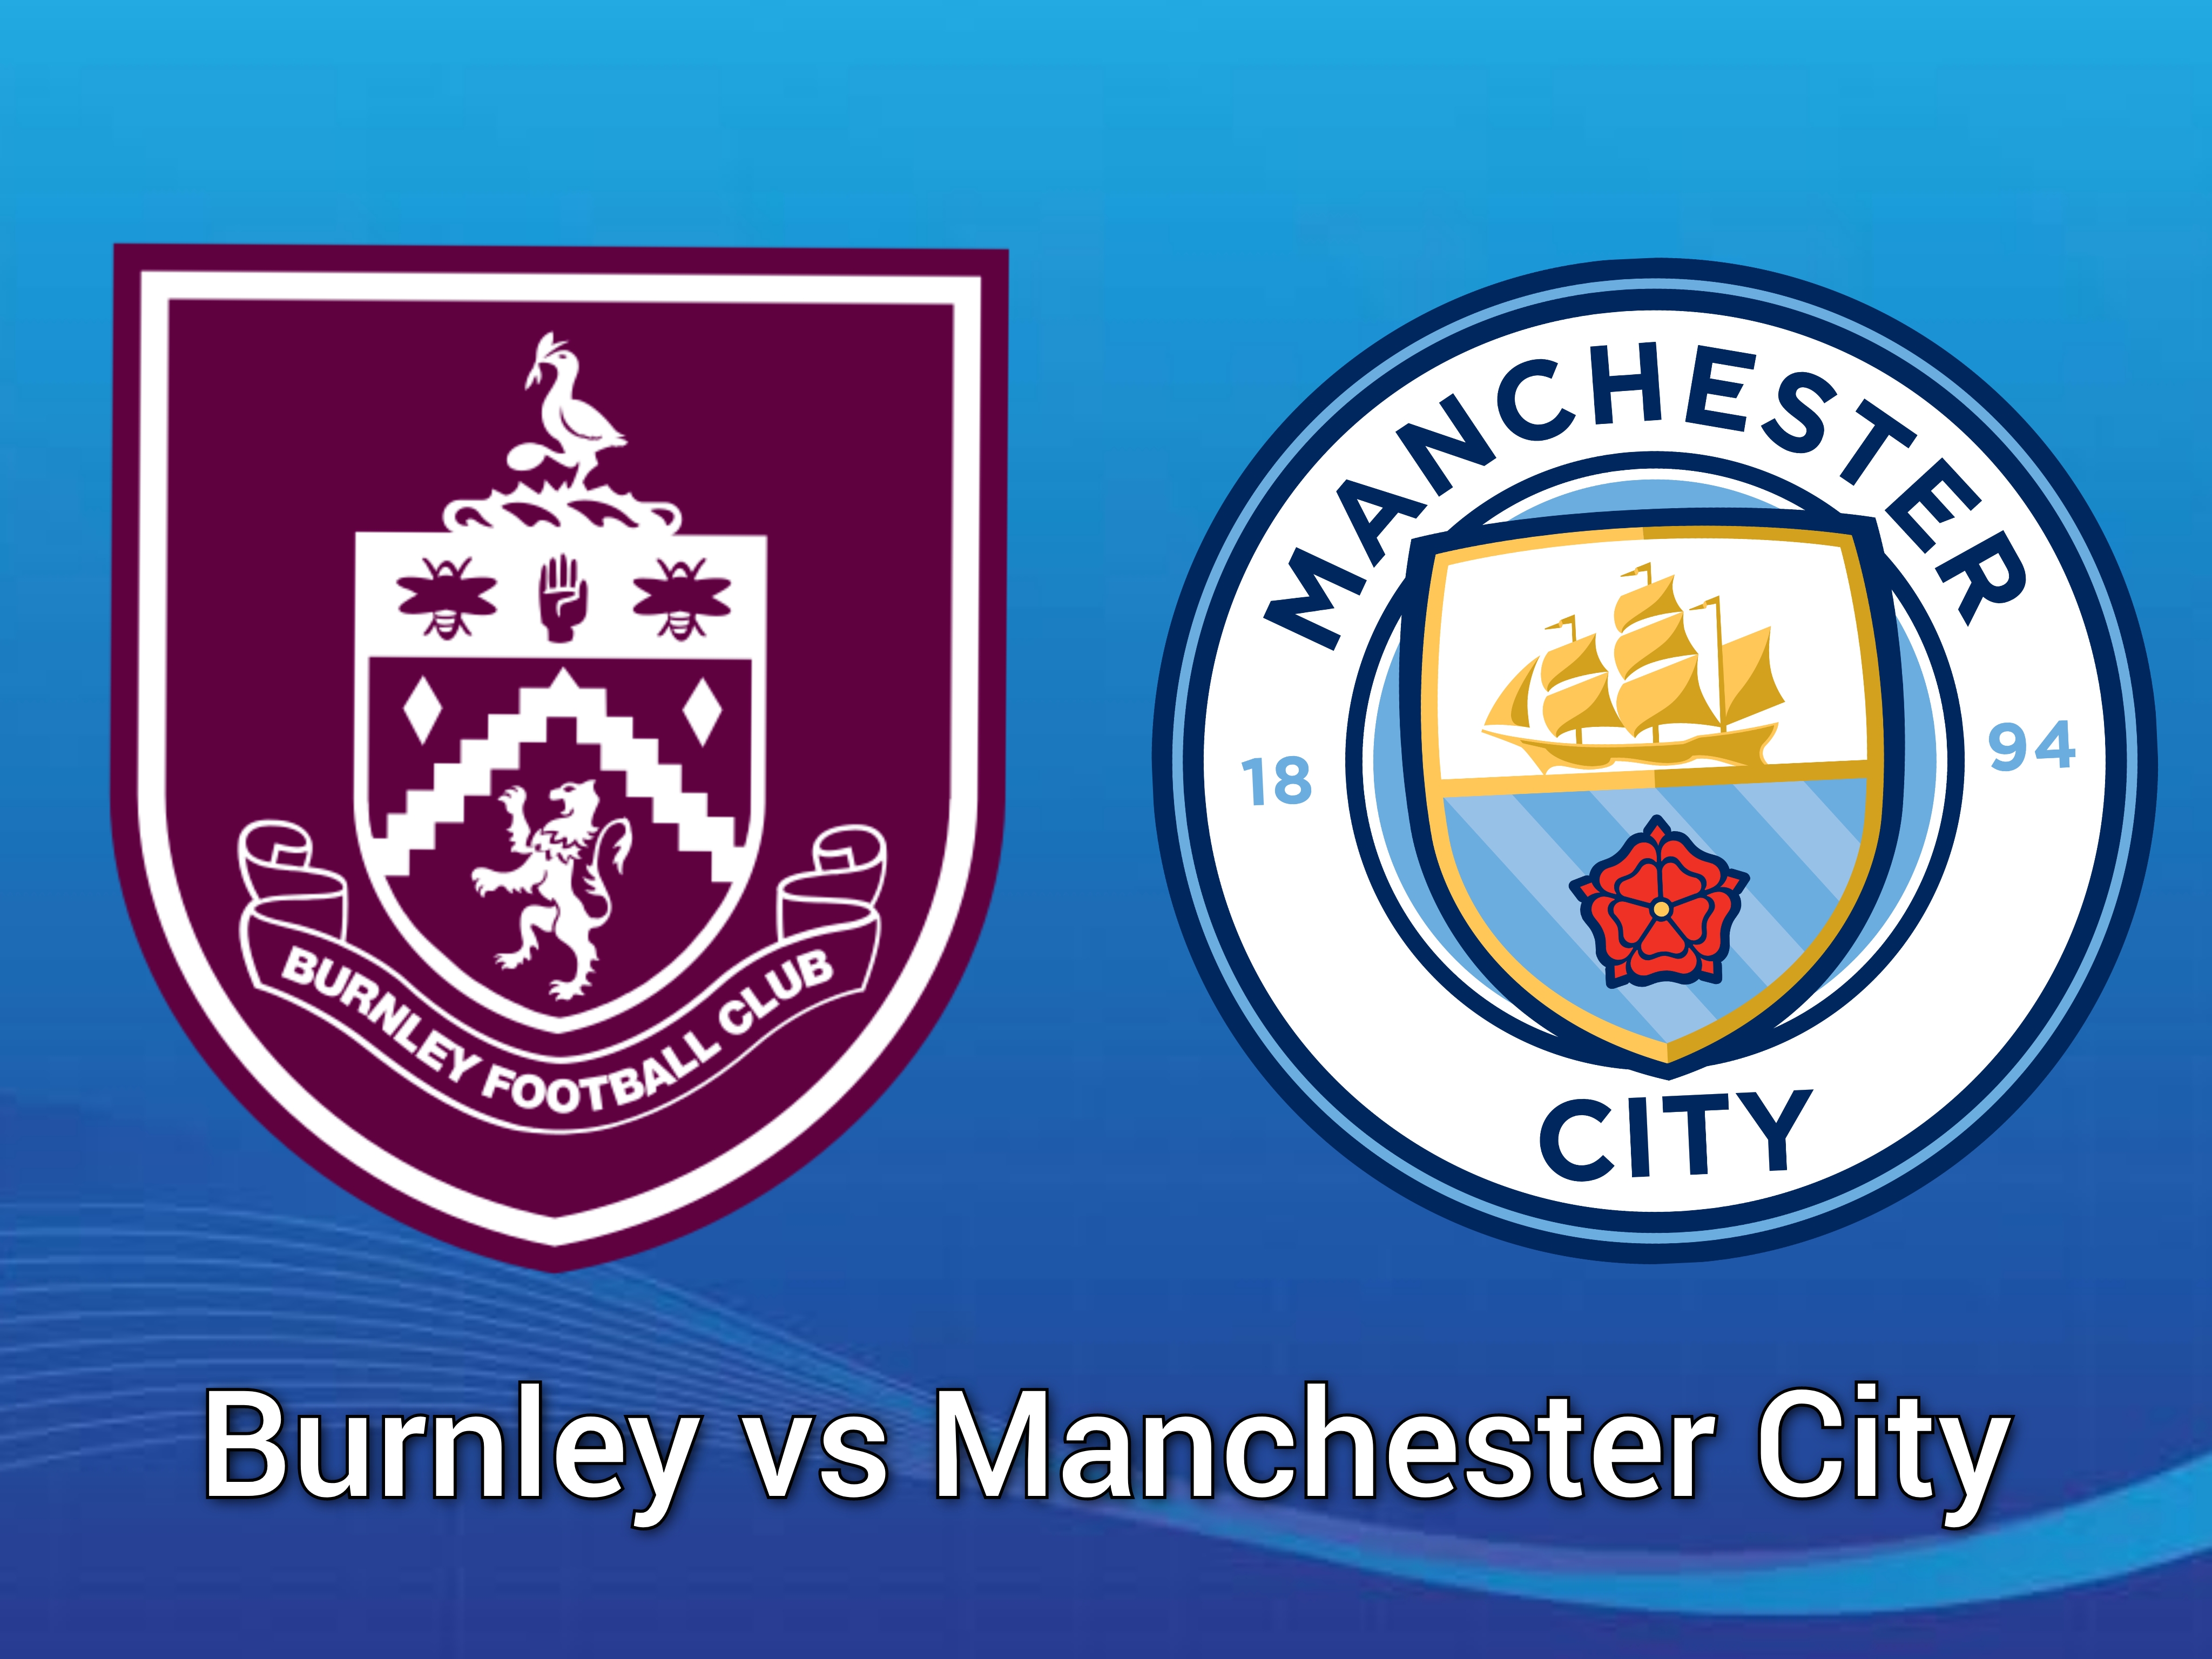 Prediksi Skor Burnley vs Manchester City di Liga Inggris: Prediksi Pemain, Link Live Streaming, hingga H2H